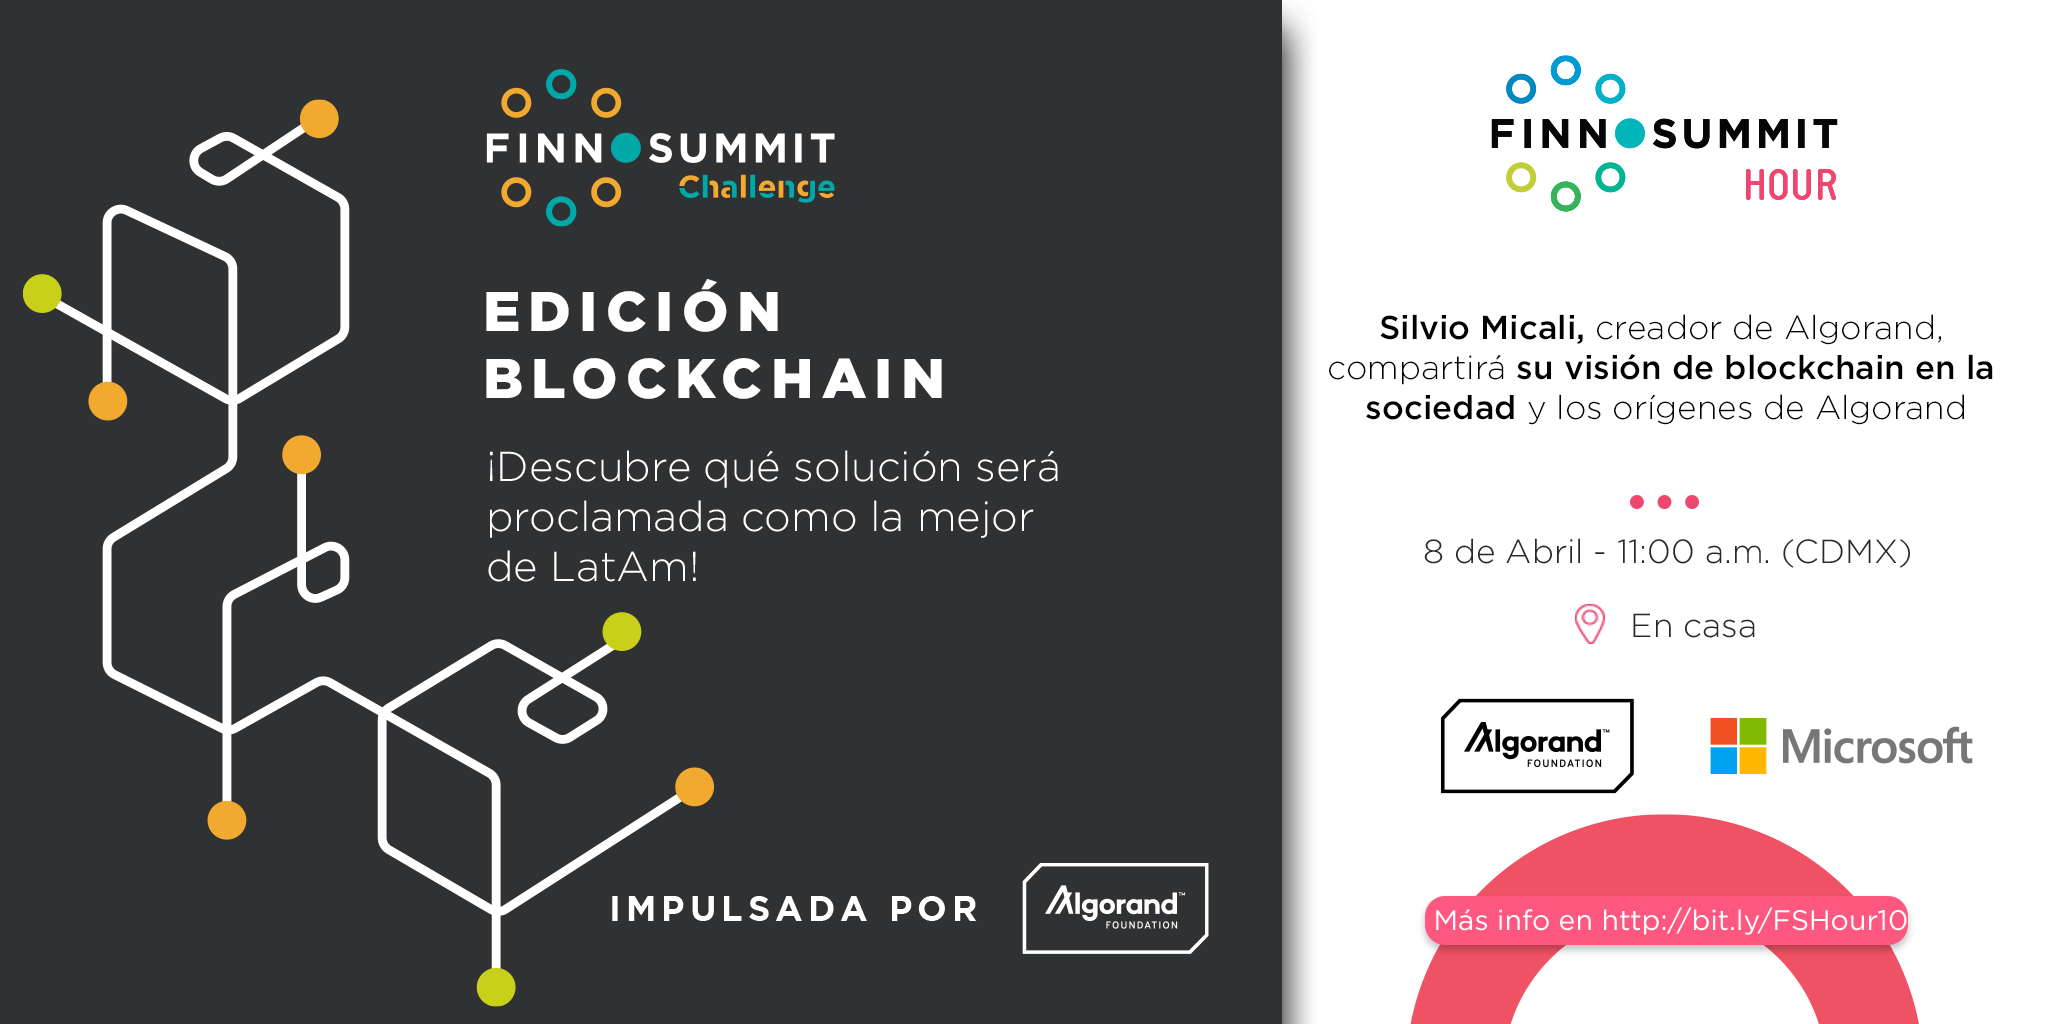 FINNOSUMMIT Challenge: Blockchain Edition Powered by Algorand Foundation